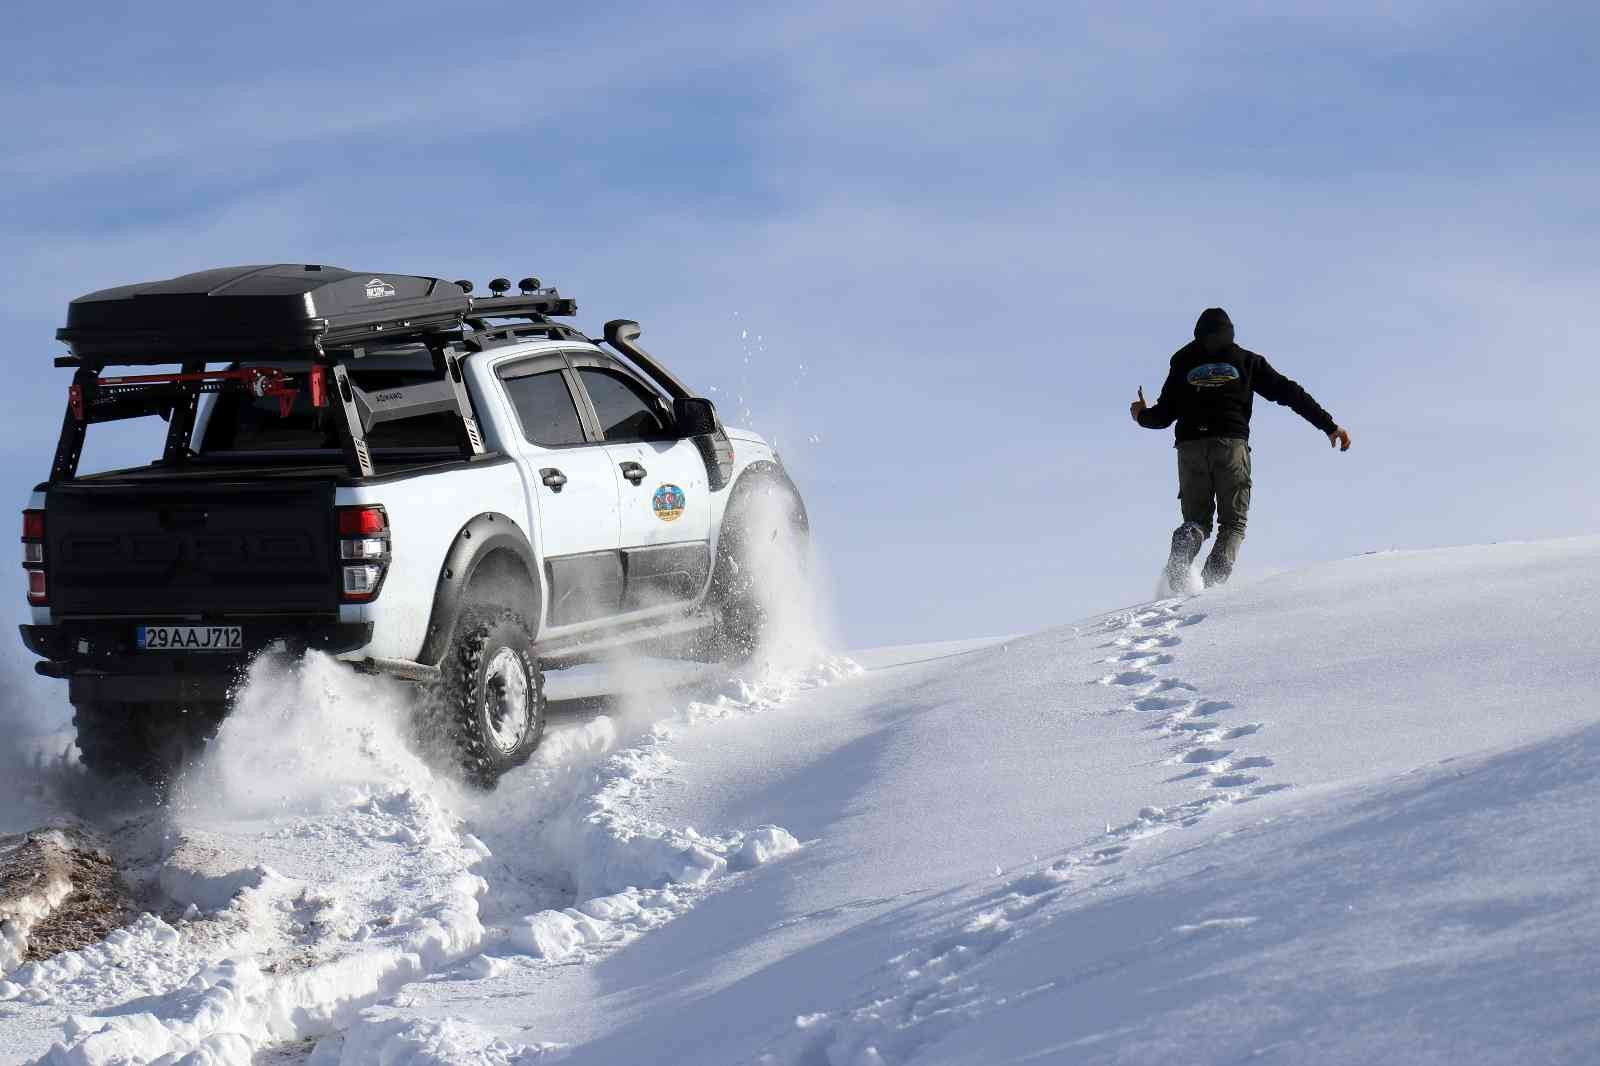 Gümüşhane’de off-road tutkunlarının karla mücadelesi #gumushane